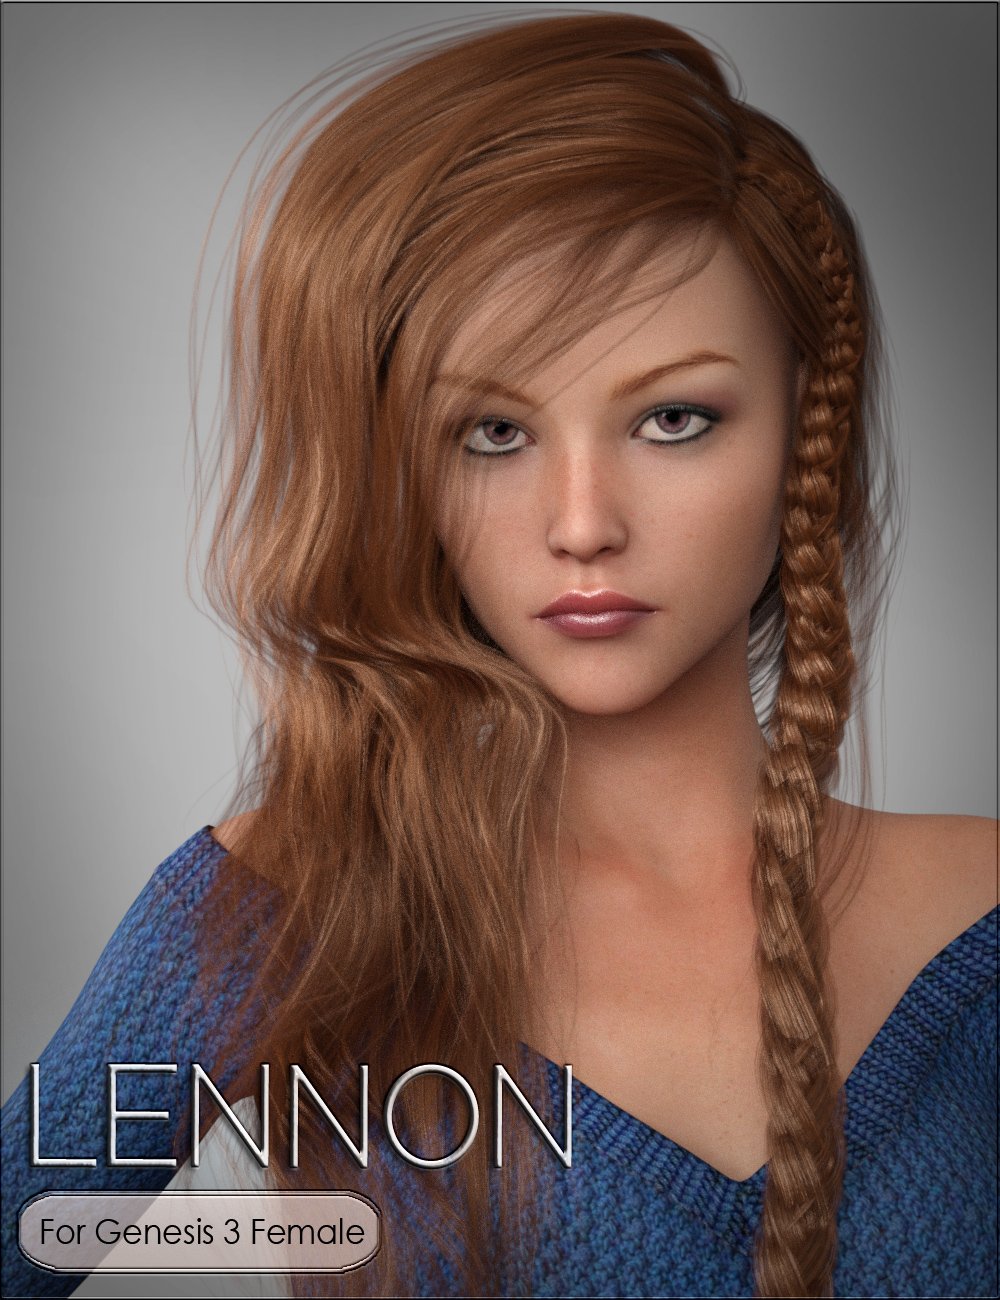 HPVYK Lennon for Genesis 3 Female by: vyktohriaSR3, 3D Models by Daz 3D